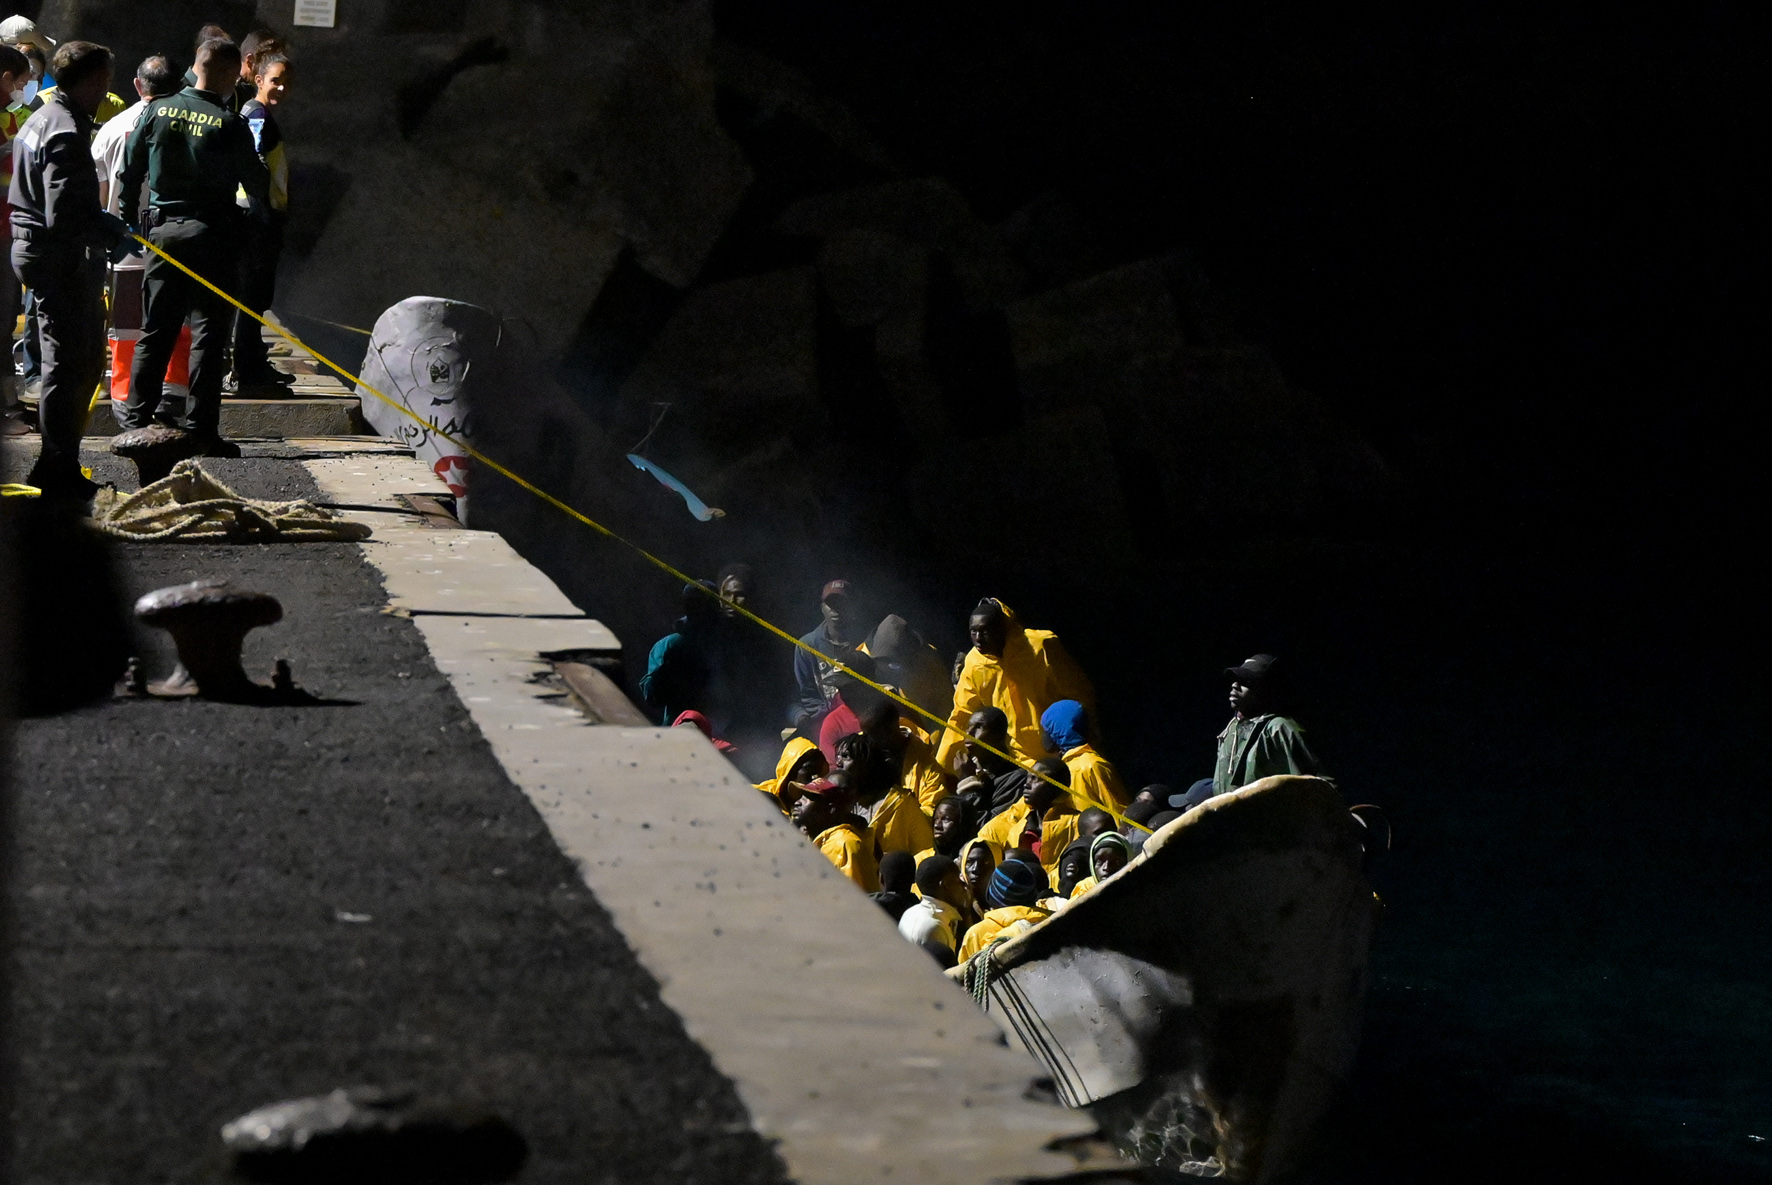 Salvamento Marítimo rescata a 55 personas a bordo de un cayuco en aguas cercanas a El Hierro durante la noche de ayer